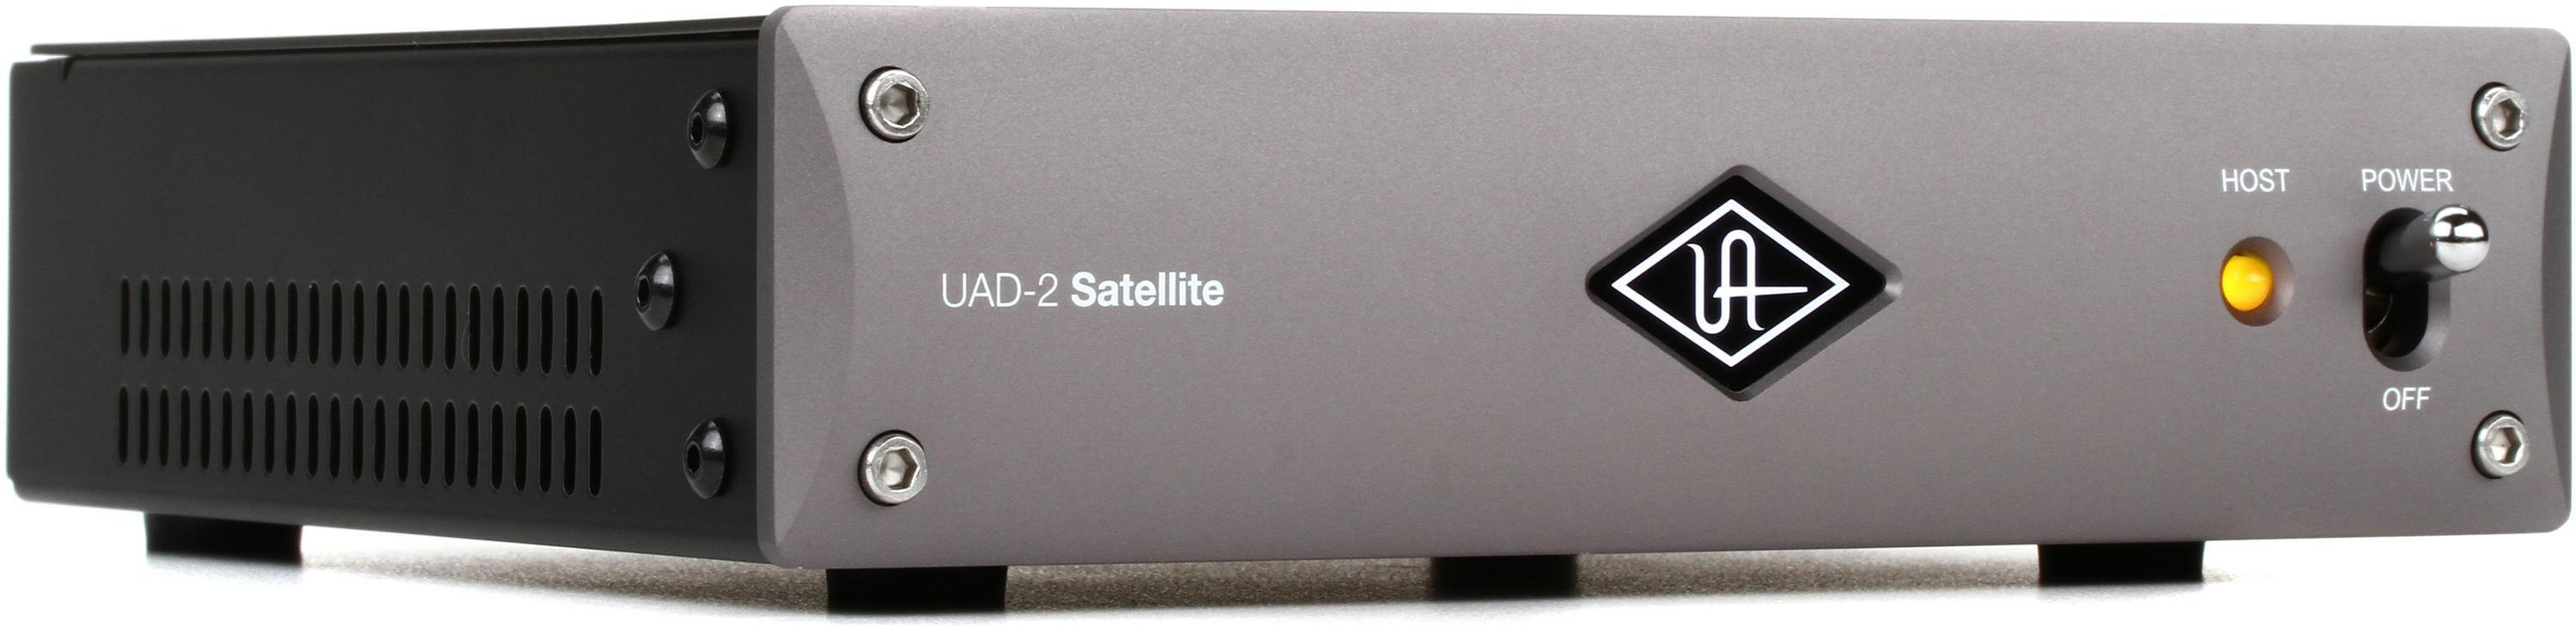 Universal Audio UAD-2 Satellite Thunderbolt 3 QUAD Core